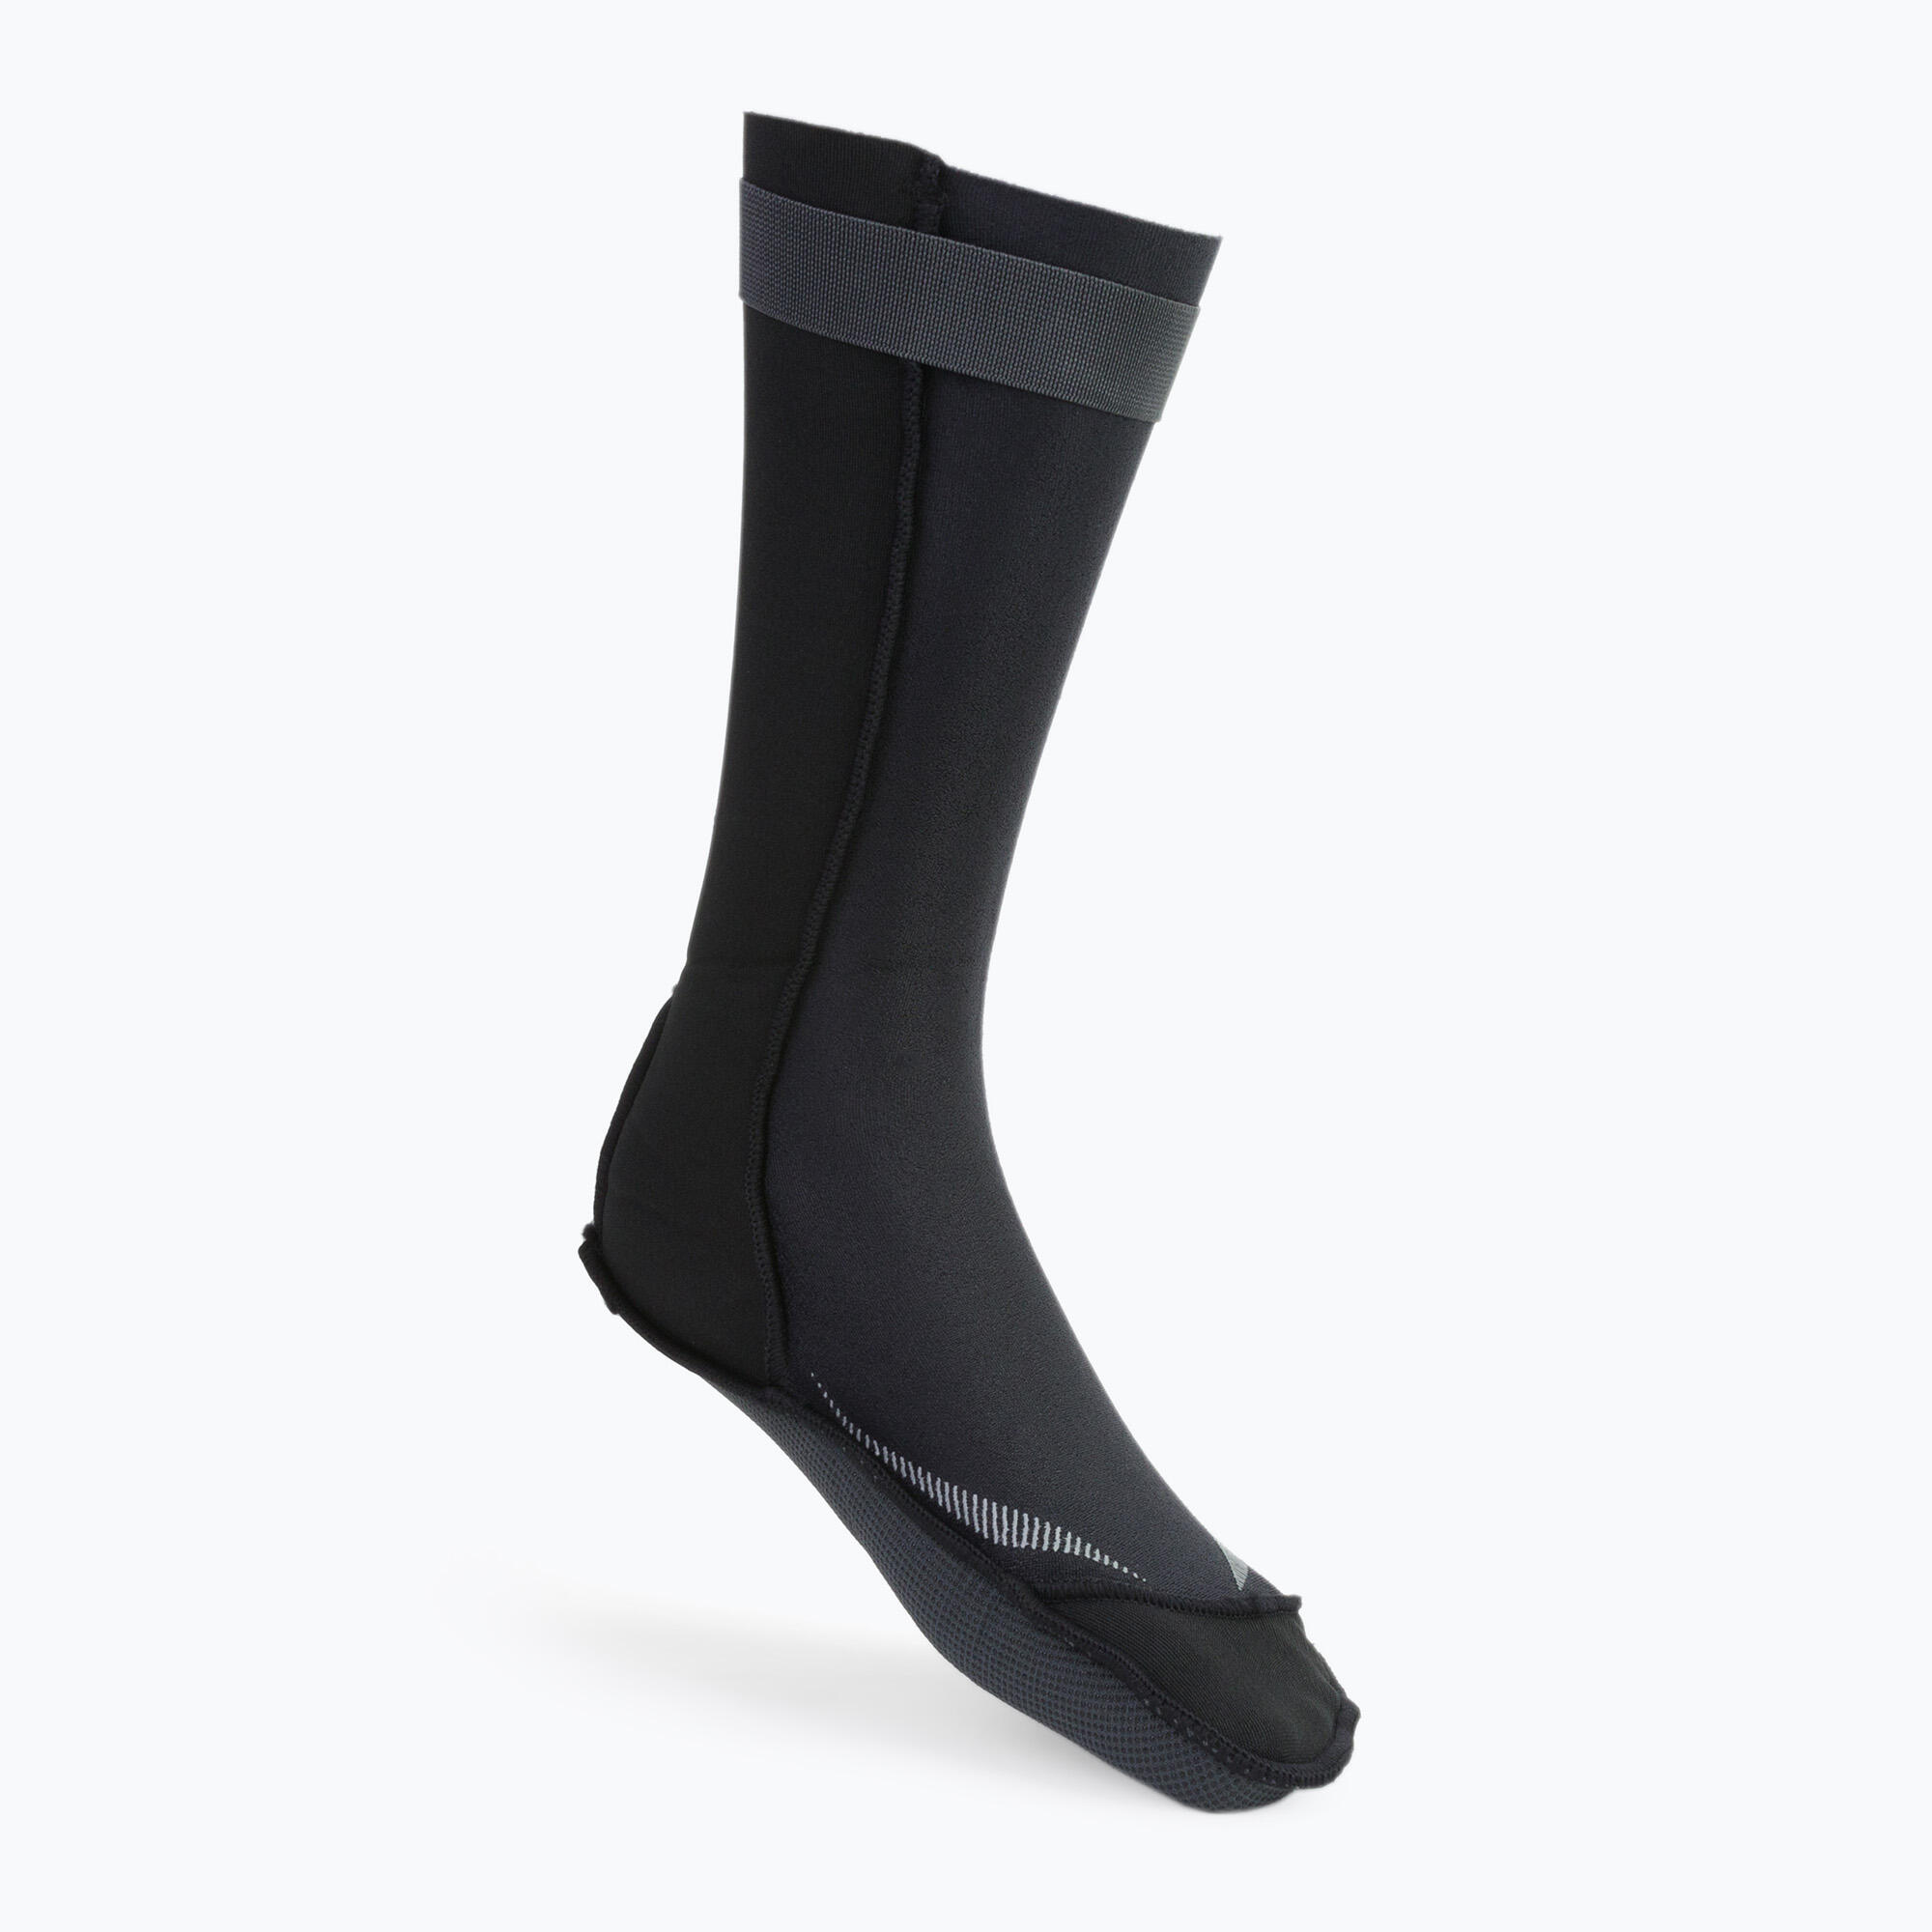 ZONE3 Neoprene Swim Socks Black/Silver - M 4/5